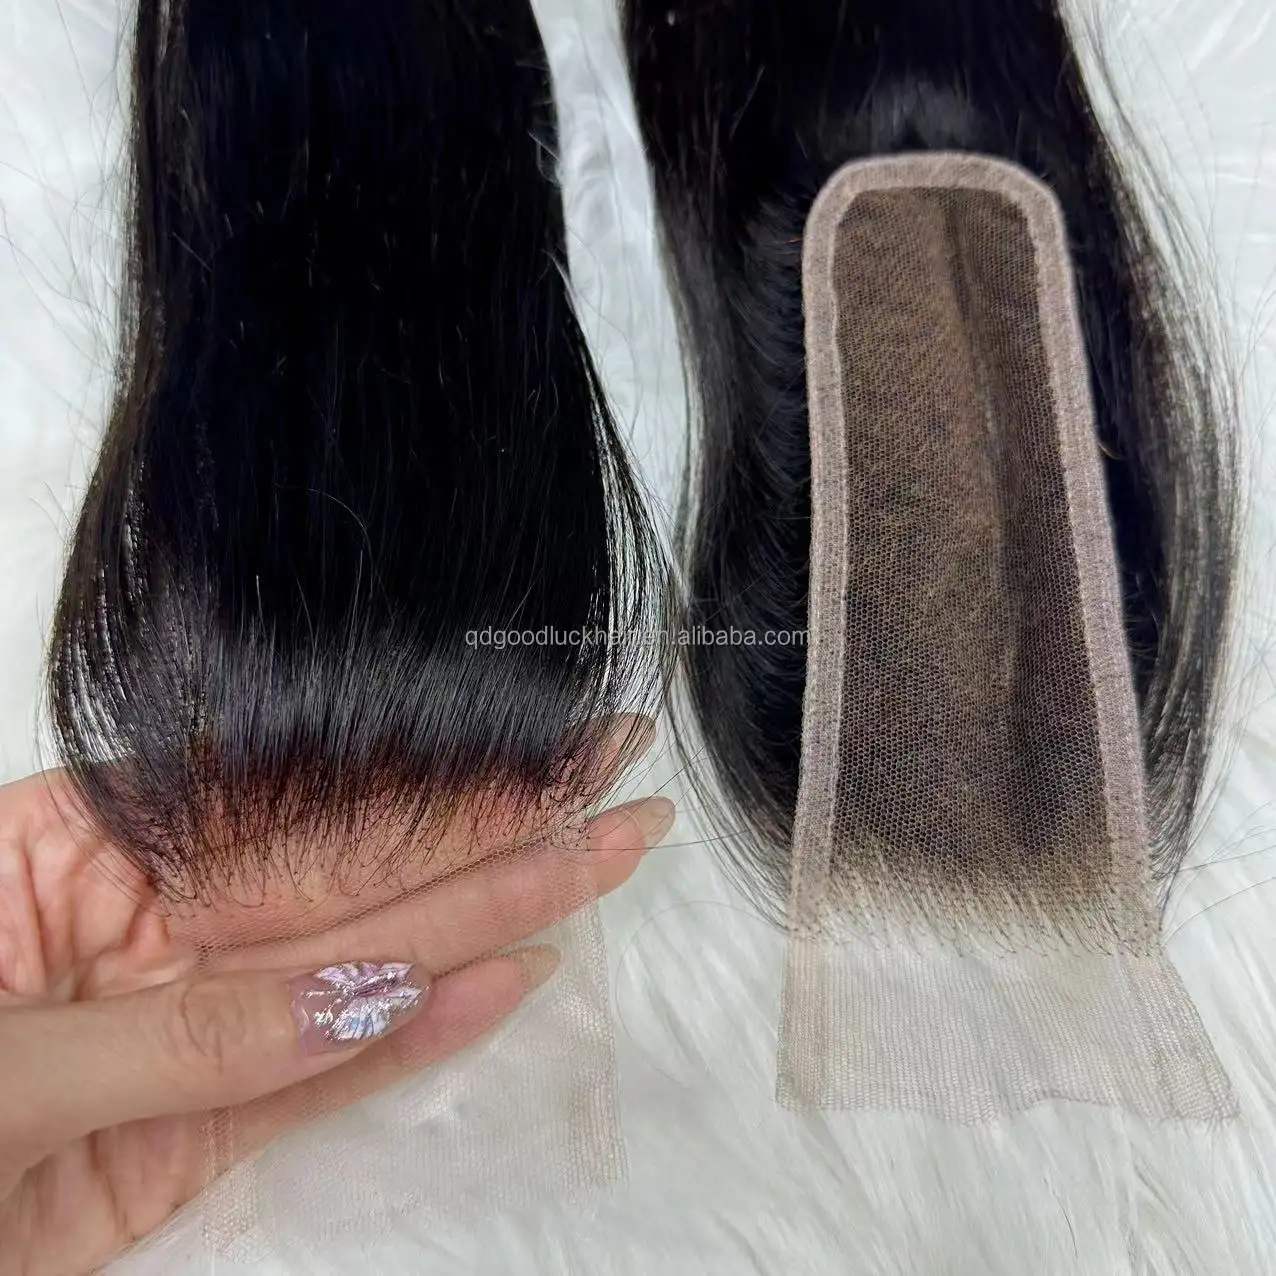 Goodluck cabelo cambojano barato fino & filme 2x6 hd brasileiro ondulado preplucked hd fechamento do laço cabelo cru 2x6 hd fechamento do laço